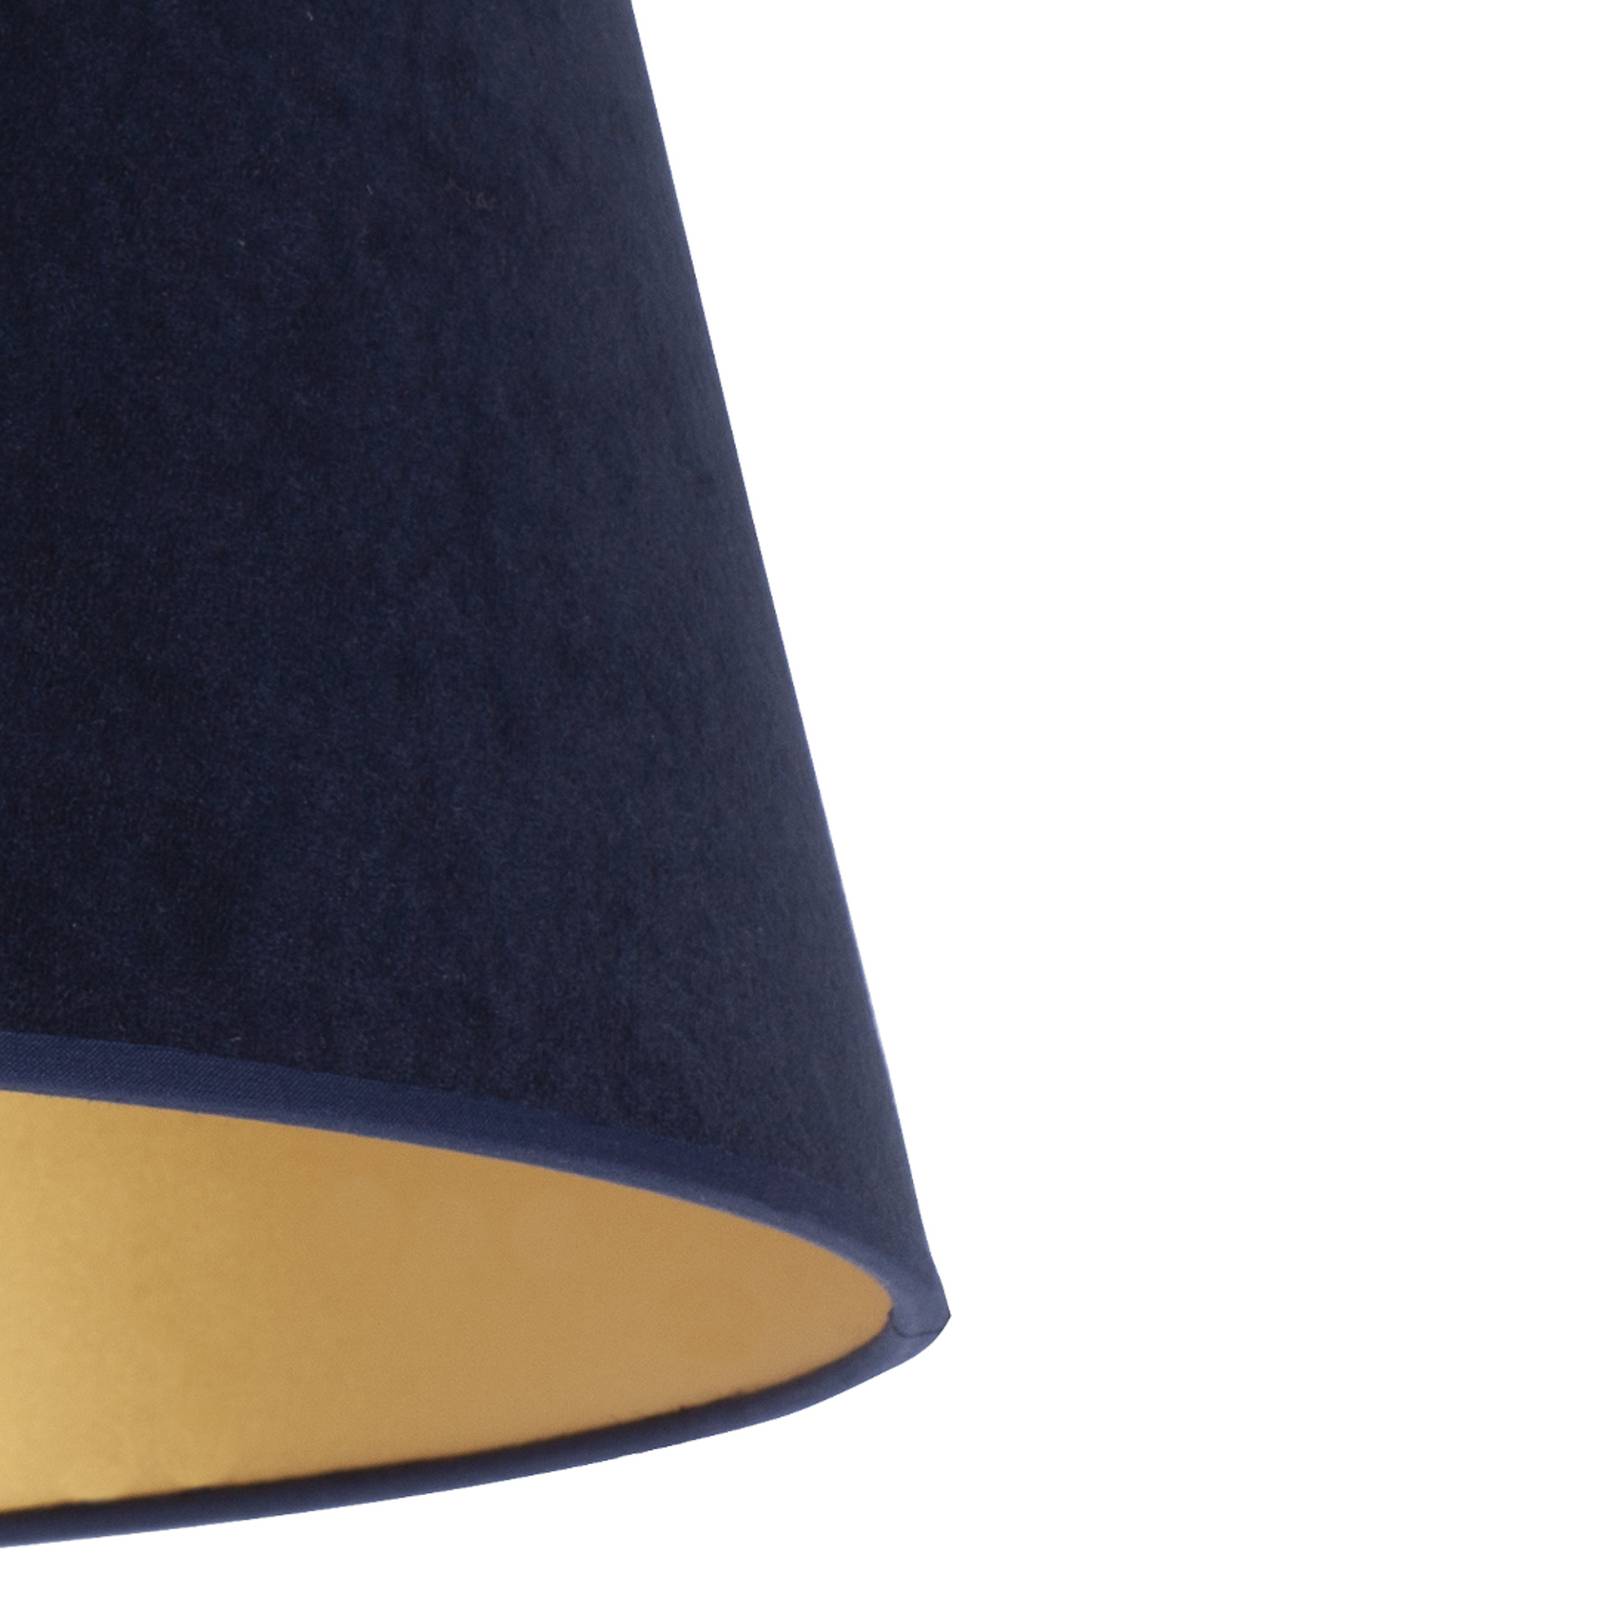 Cone lampeskærm, højde 18 cm, mørkeblå/guld